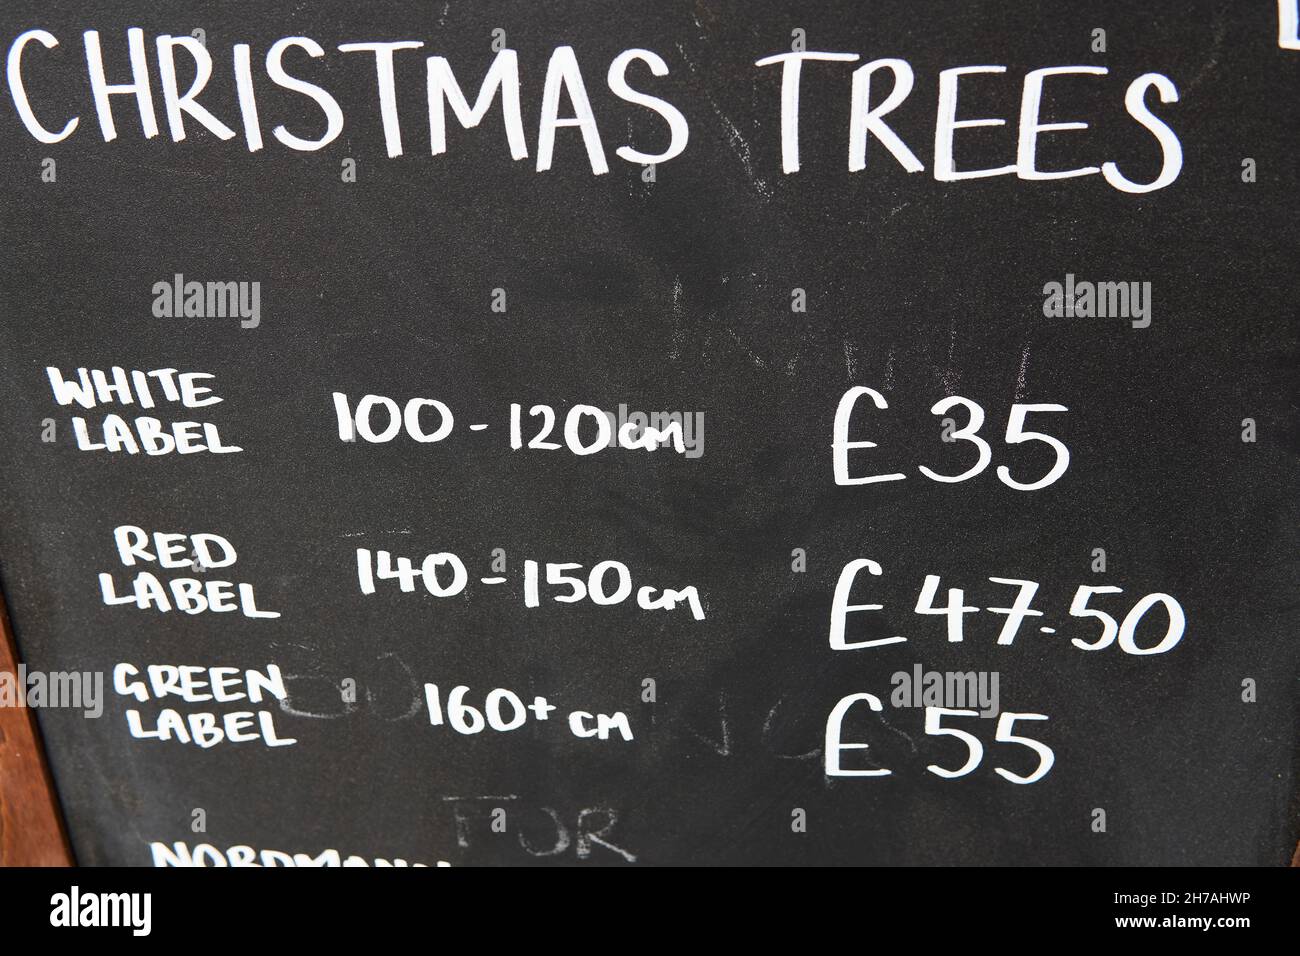 tiza árbol de Navidad dibujado a mano sobre un fondo de tablero negro con precios de la libra. Venta de árboles de Navidad. Foto de stock